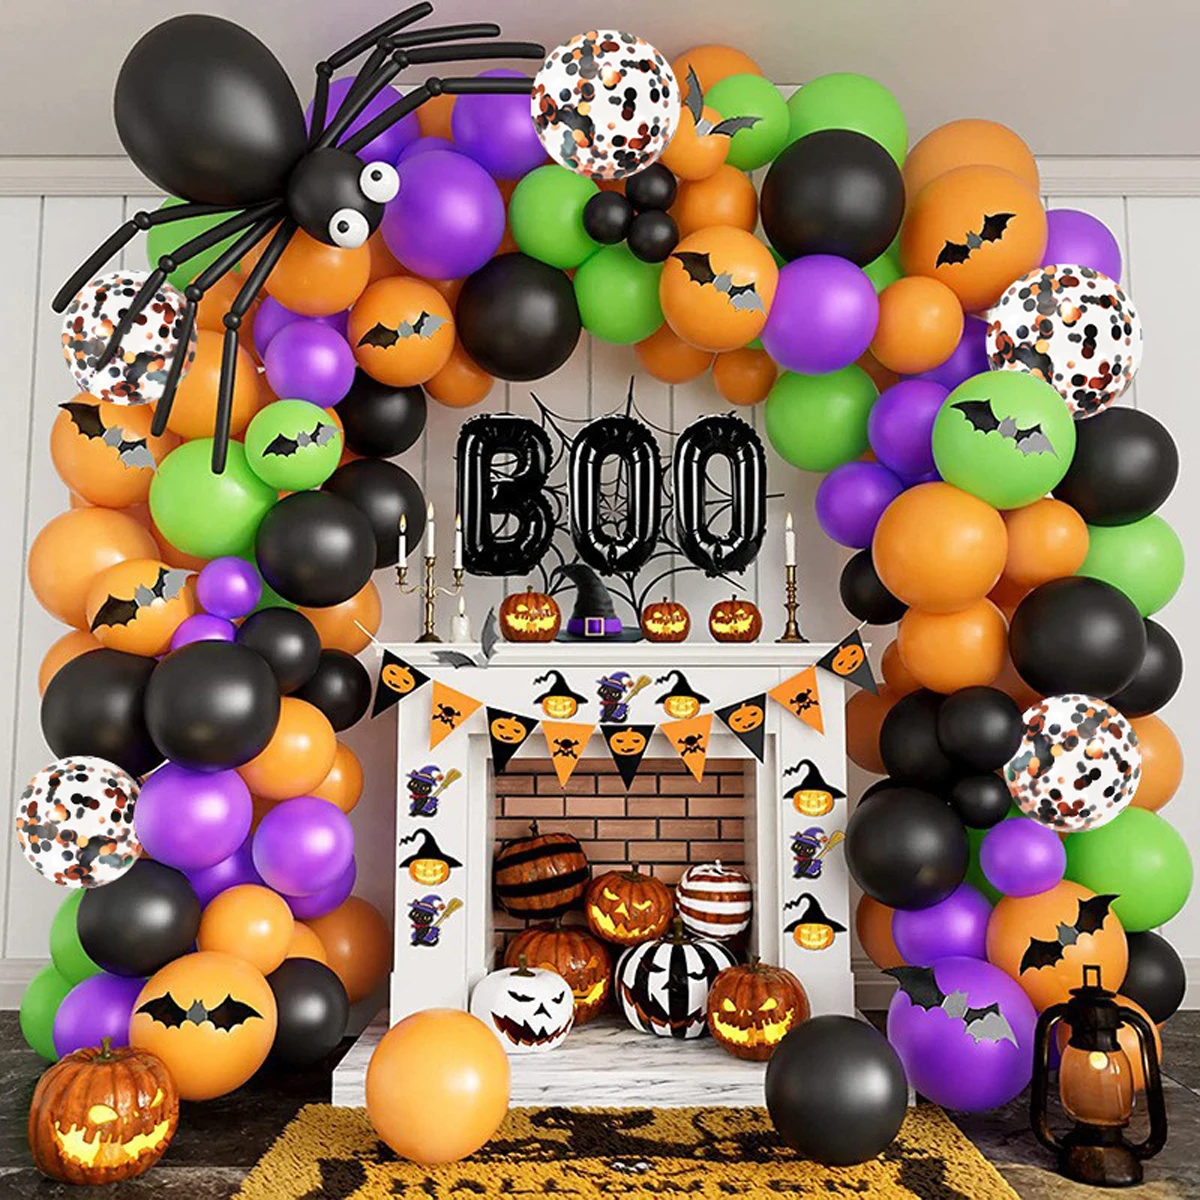 

Гирлянда на Хэллоуин, аксессуары для украшения, мультяшный паук, летучая мышь, оранжевый, фиолетовый, латексный шар, украшение для дома